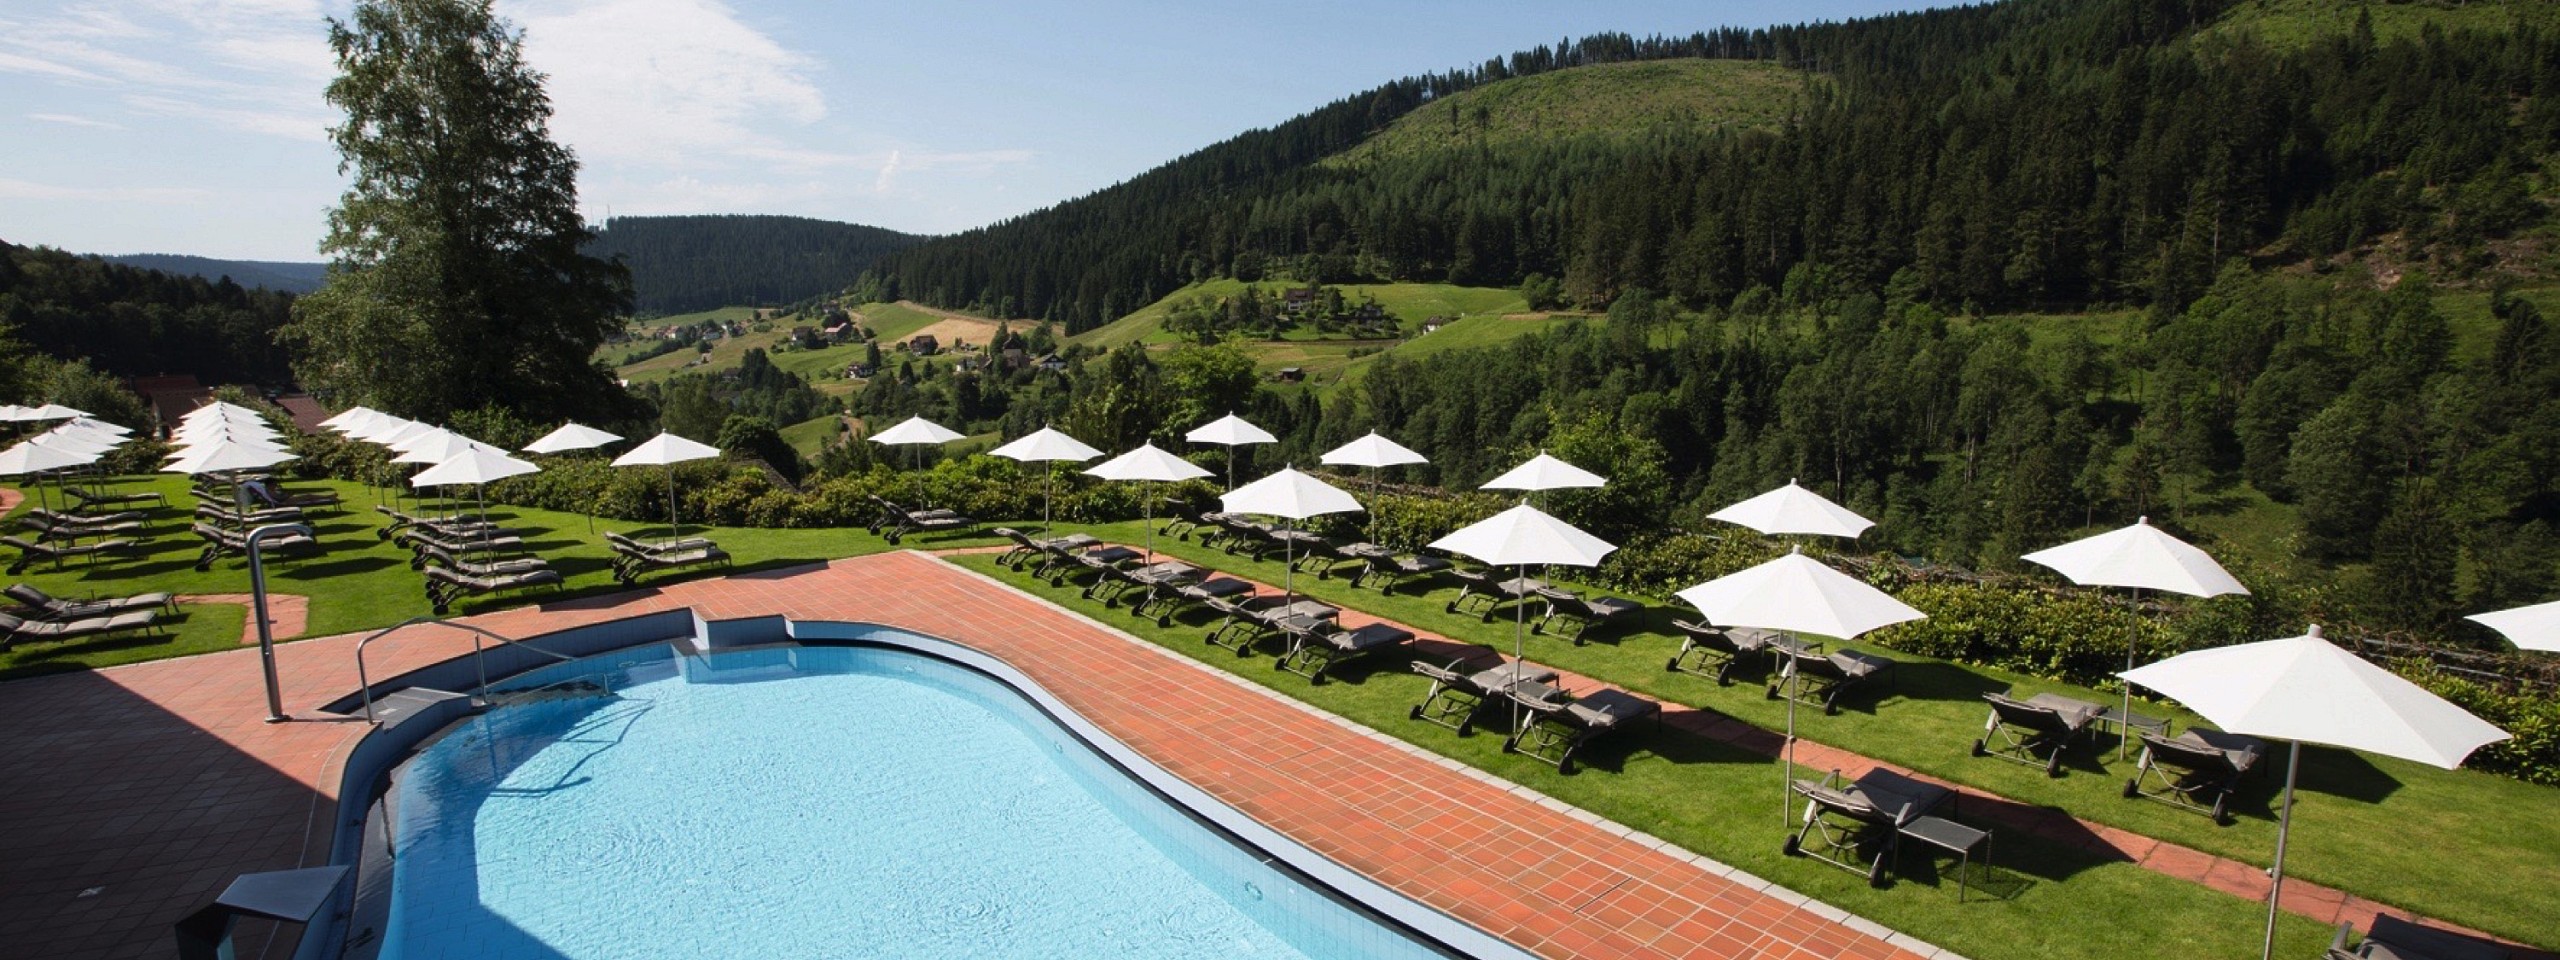 Großer Poolbereich mit Liegen im Hotel mit Arrangements im Schwarzwald.